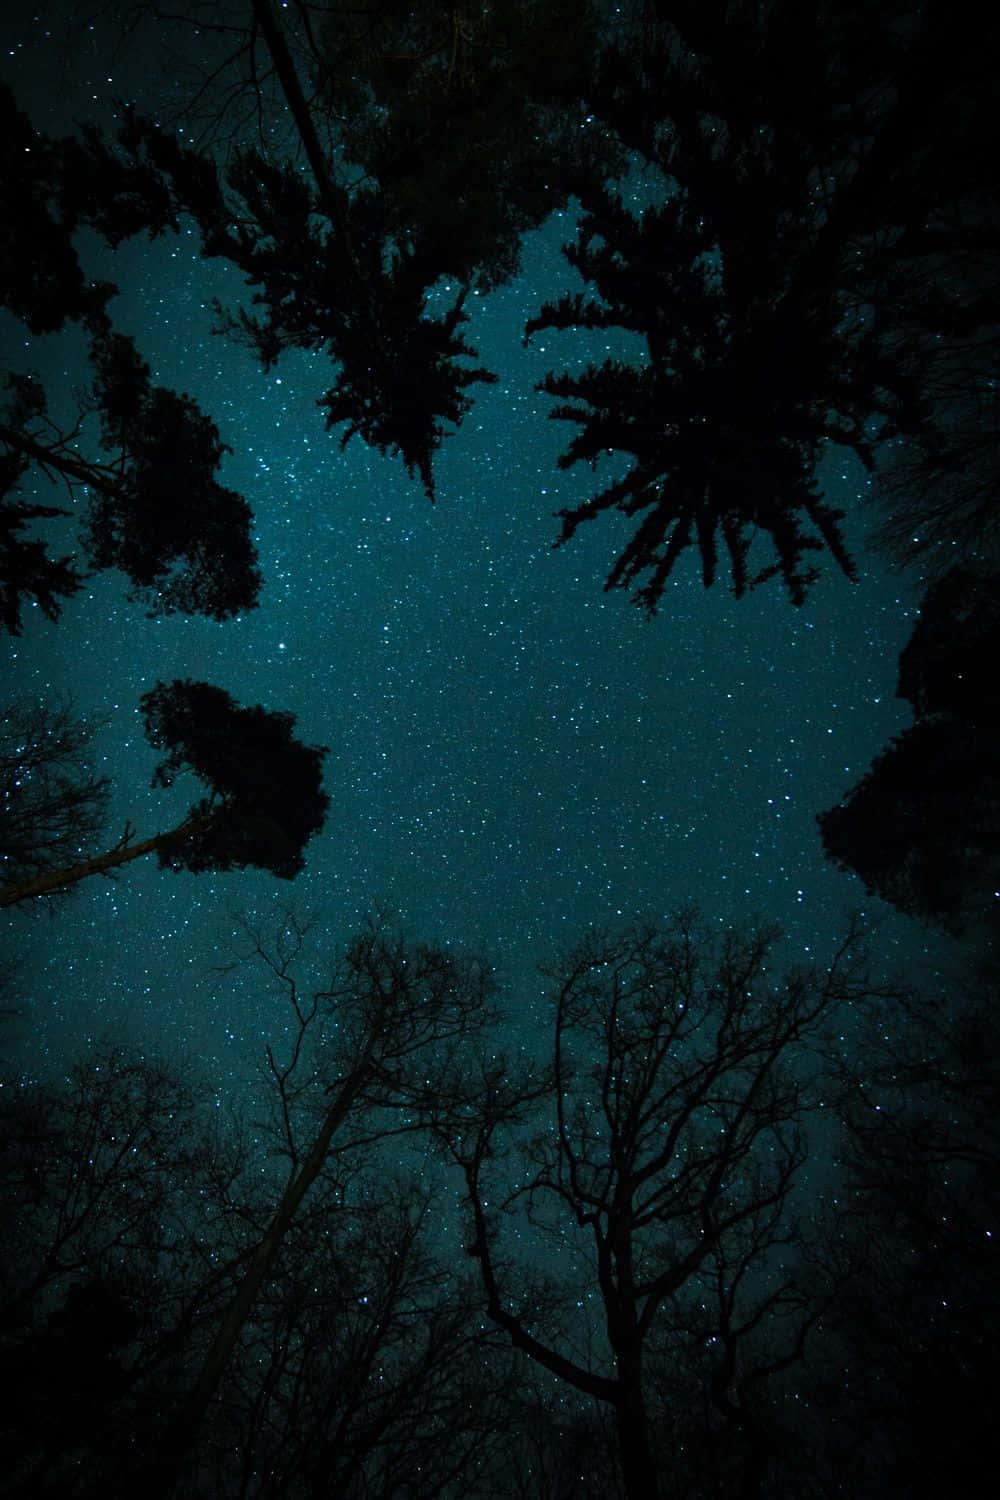 Cielonocturno Estrellado Oscuro Desde La Perspectiva De Un Ojo De Lombriz Fondo de pantalla